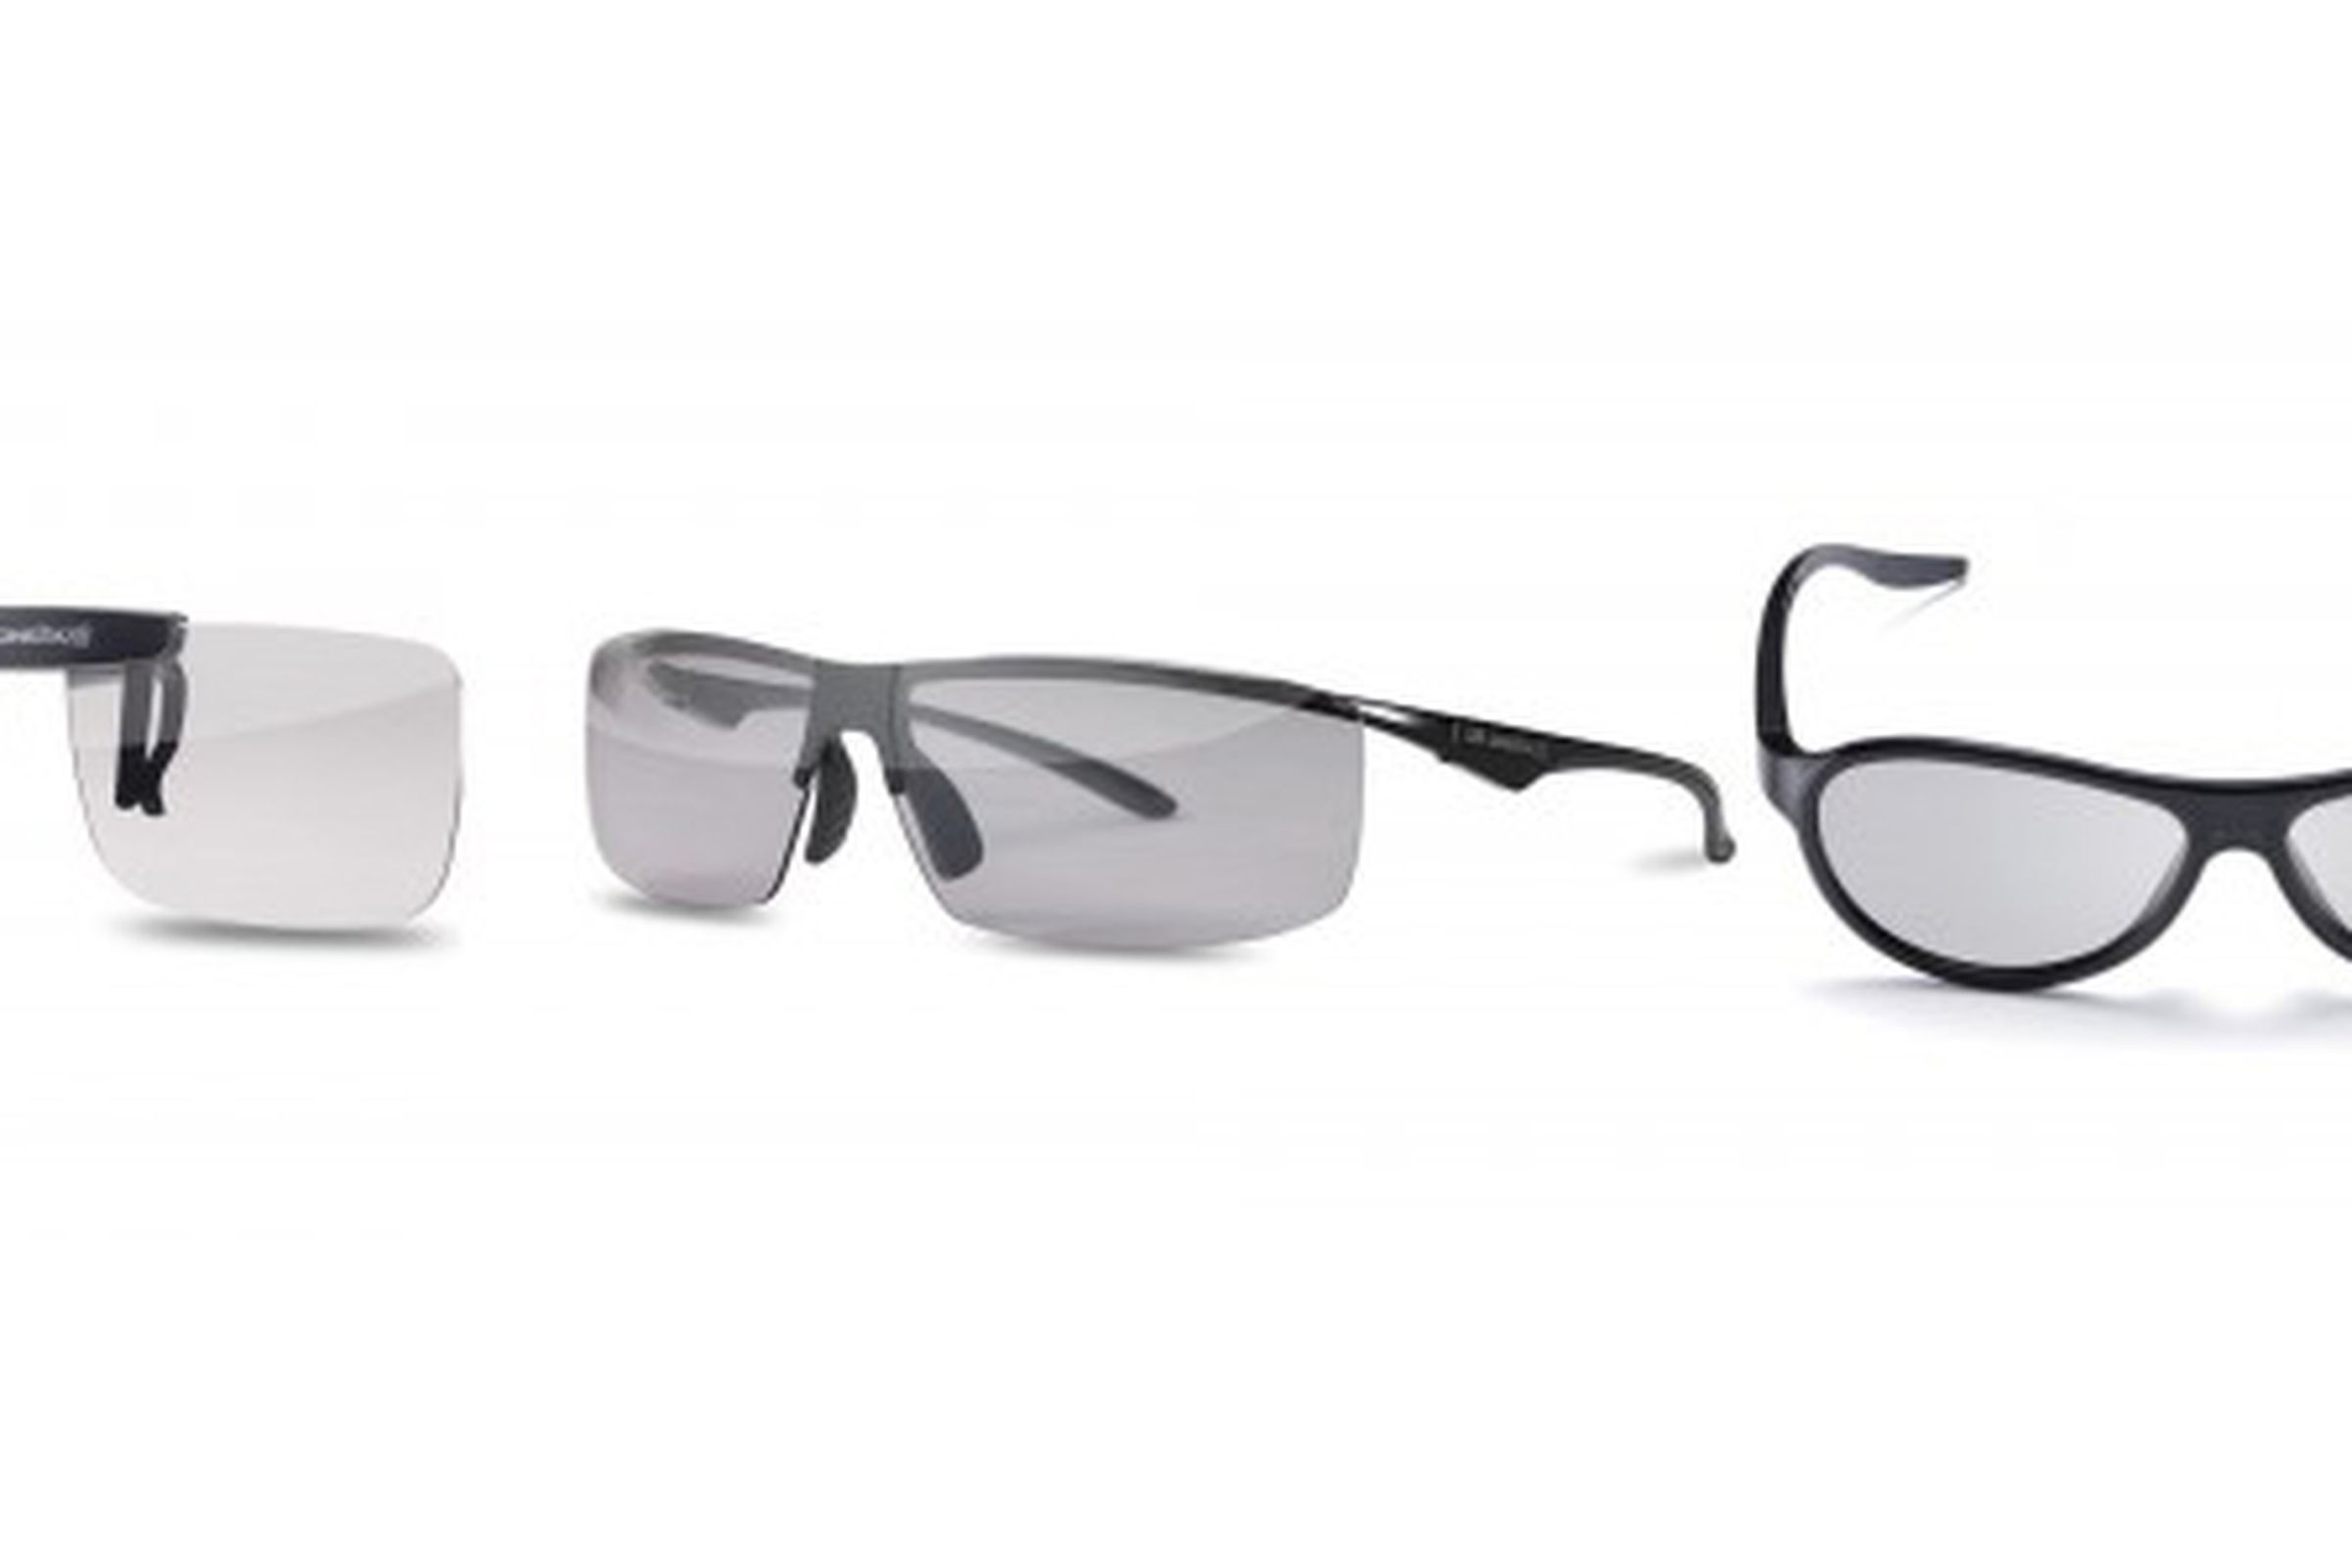 LG 3D Glasses 2012